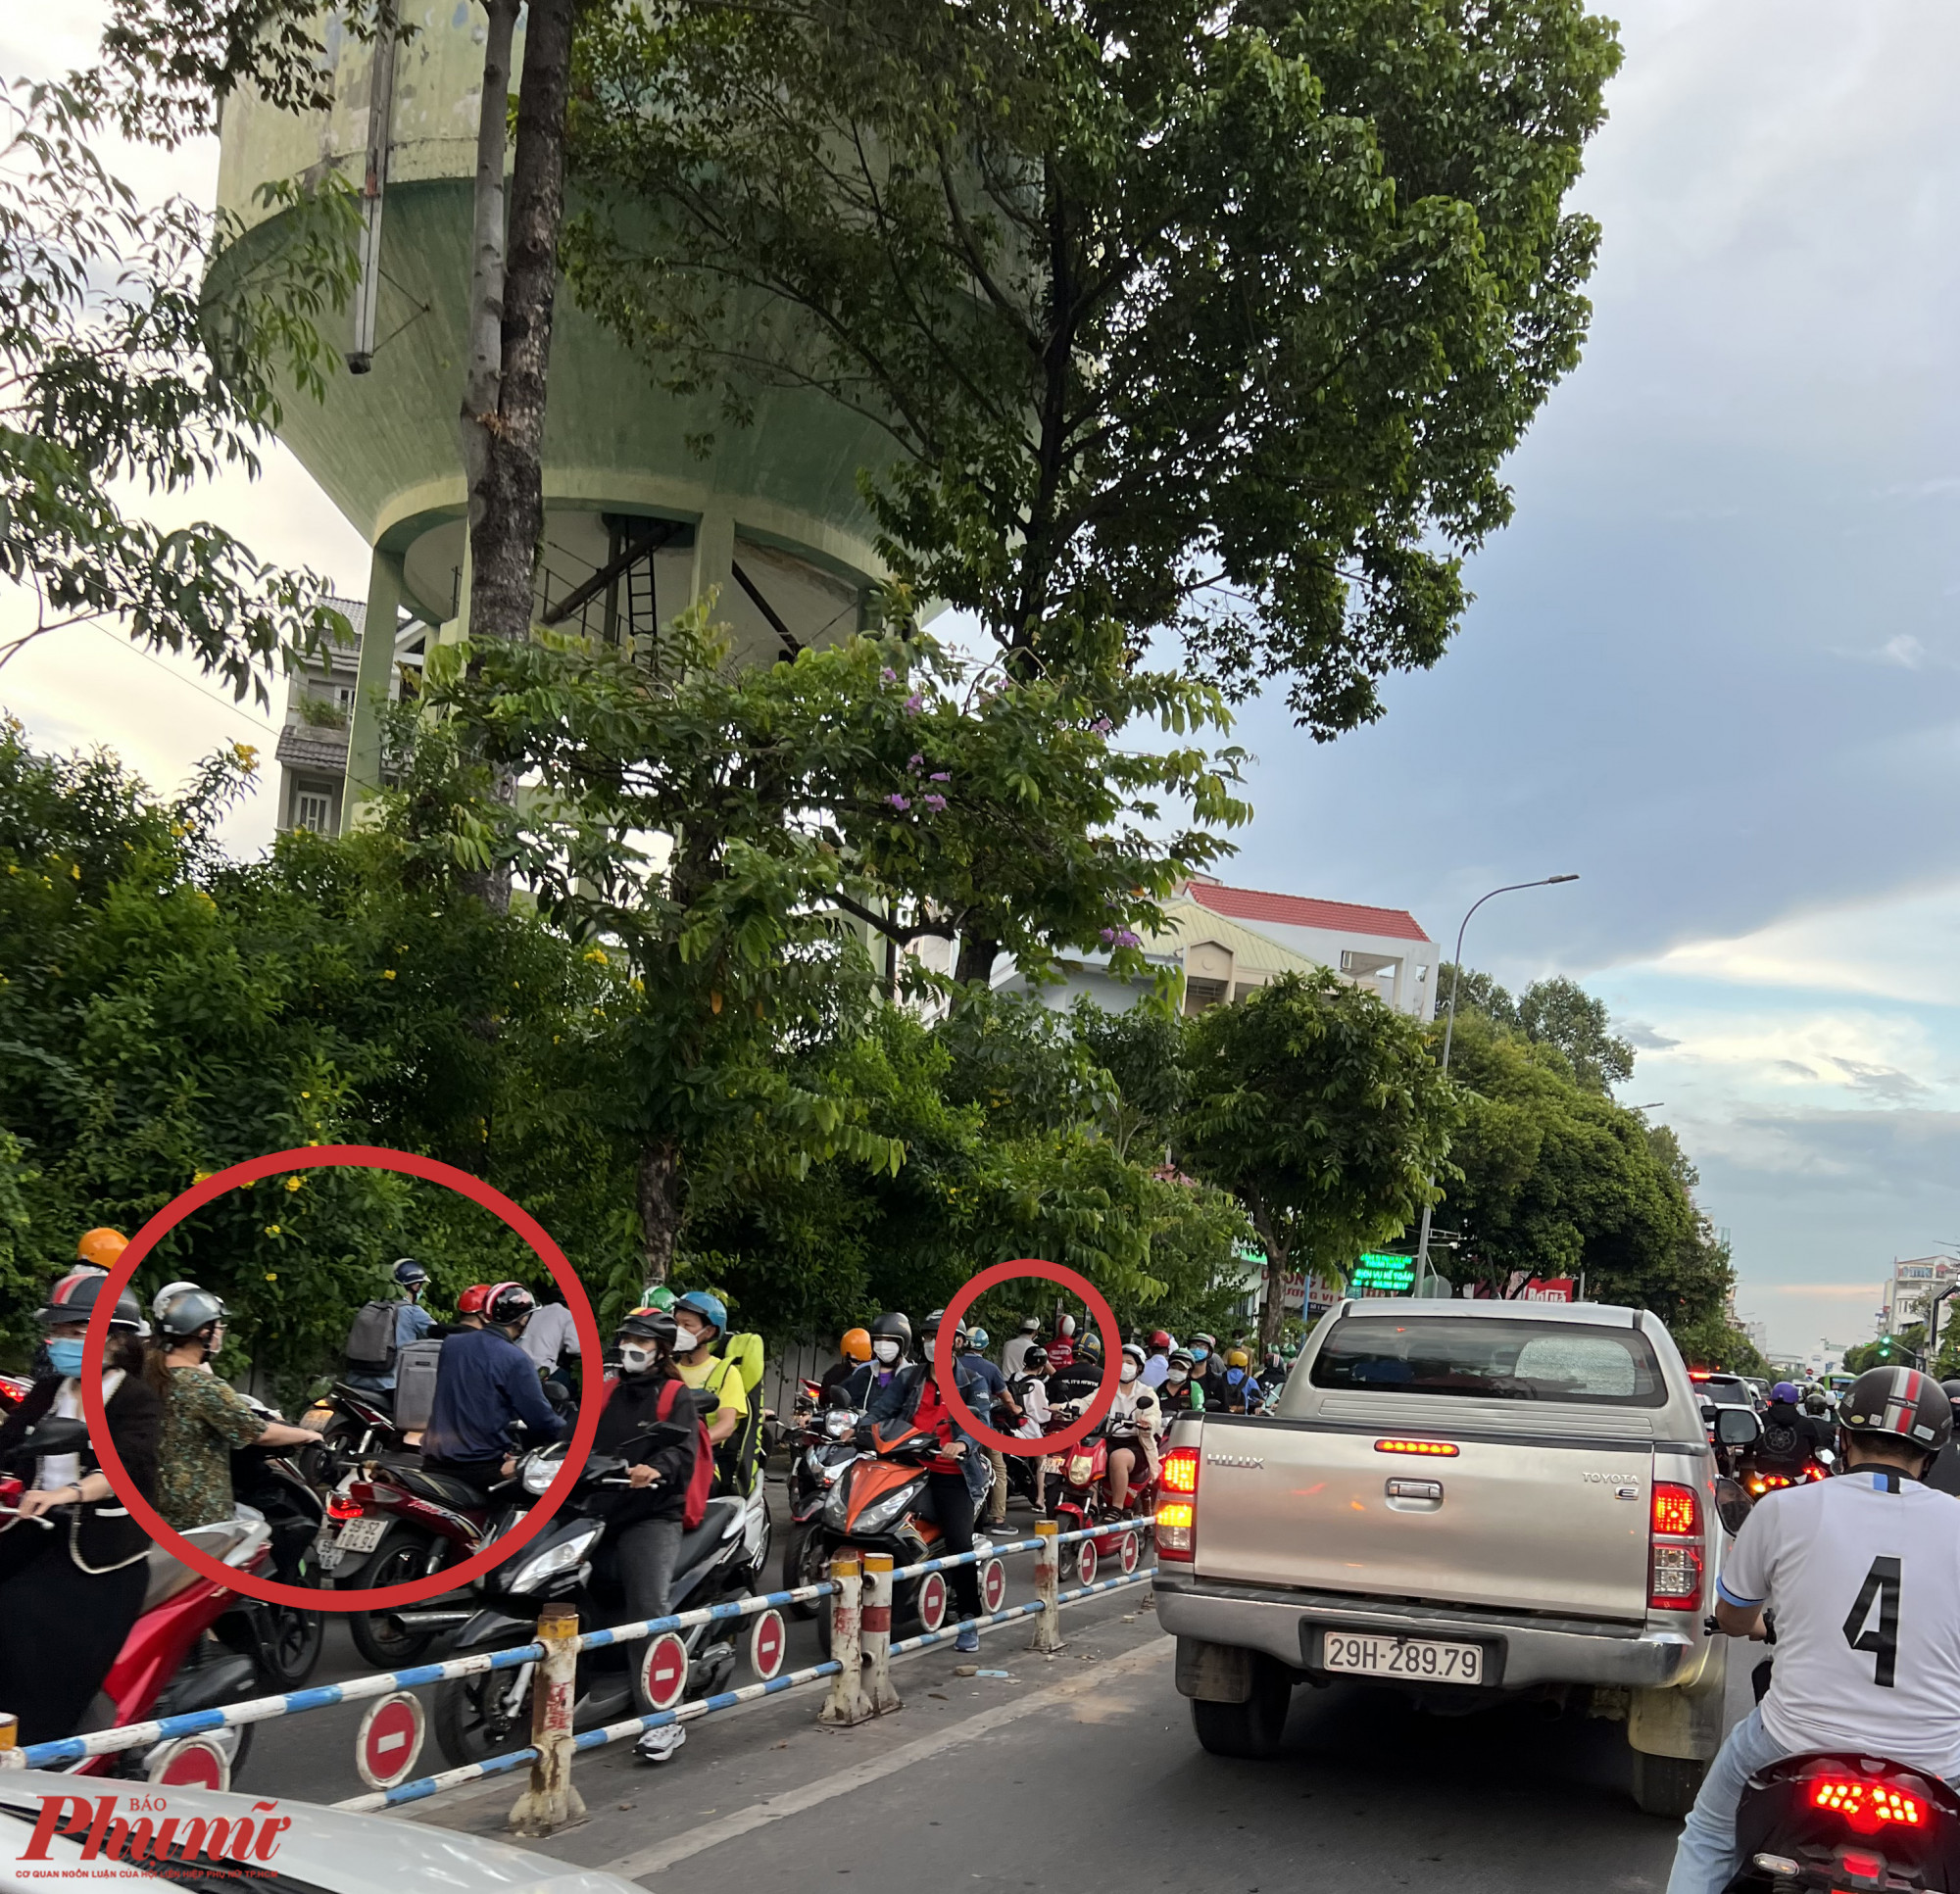 Đôi khi, đường Nguyễn Thái Sơn hướng về quận Gò Vấp không hẳn kẹt xe nhưng nhiều người vẫn chọn